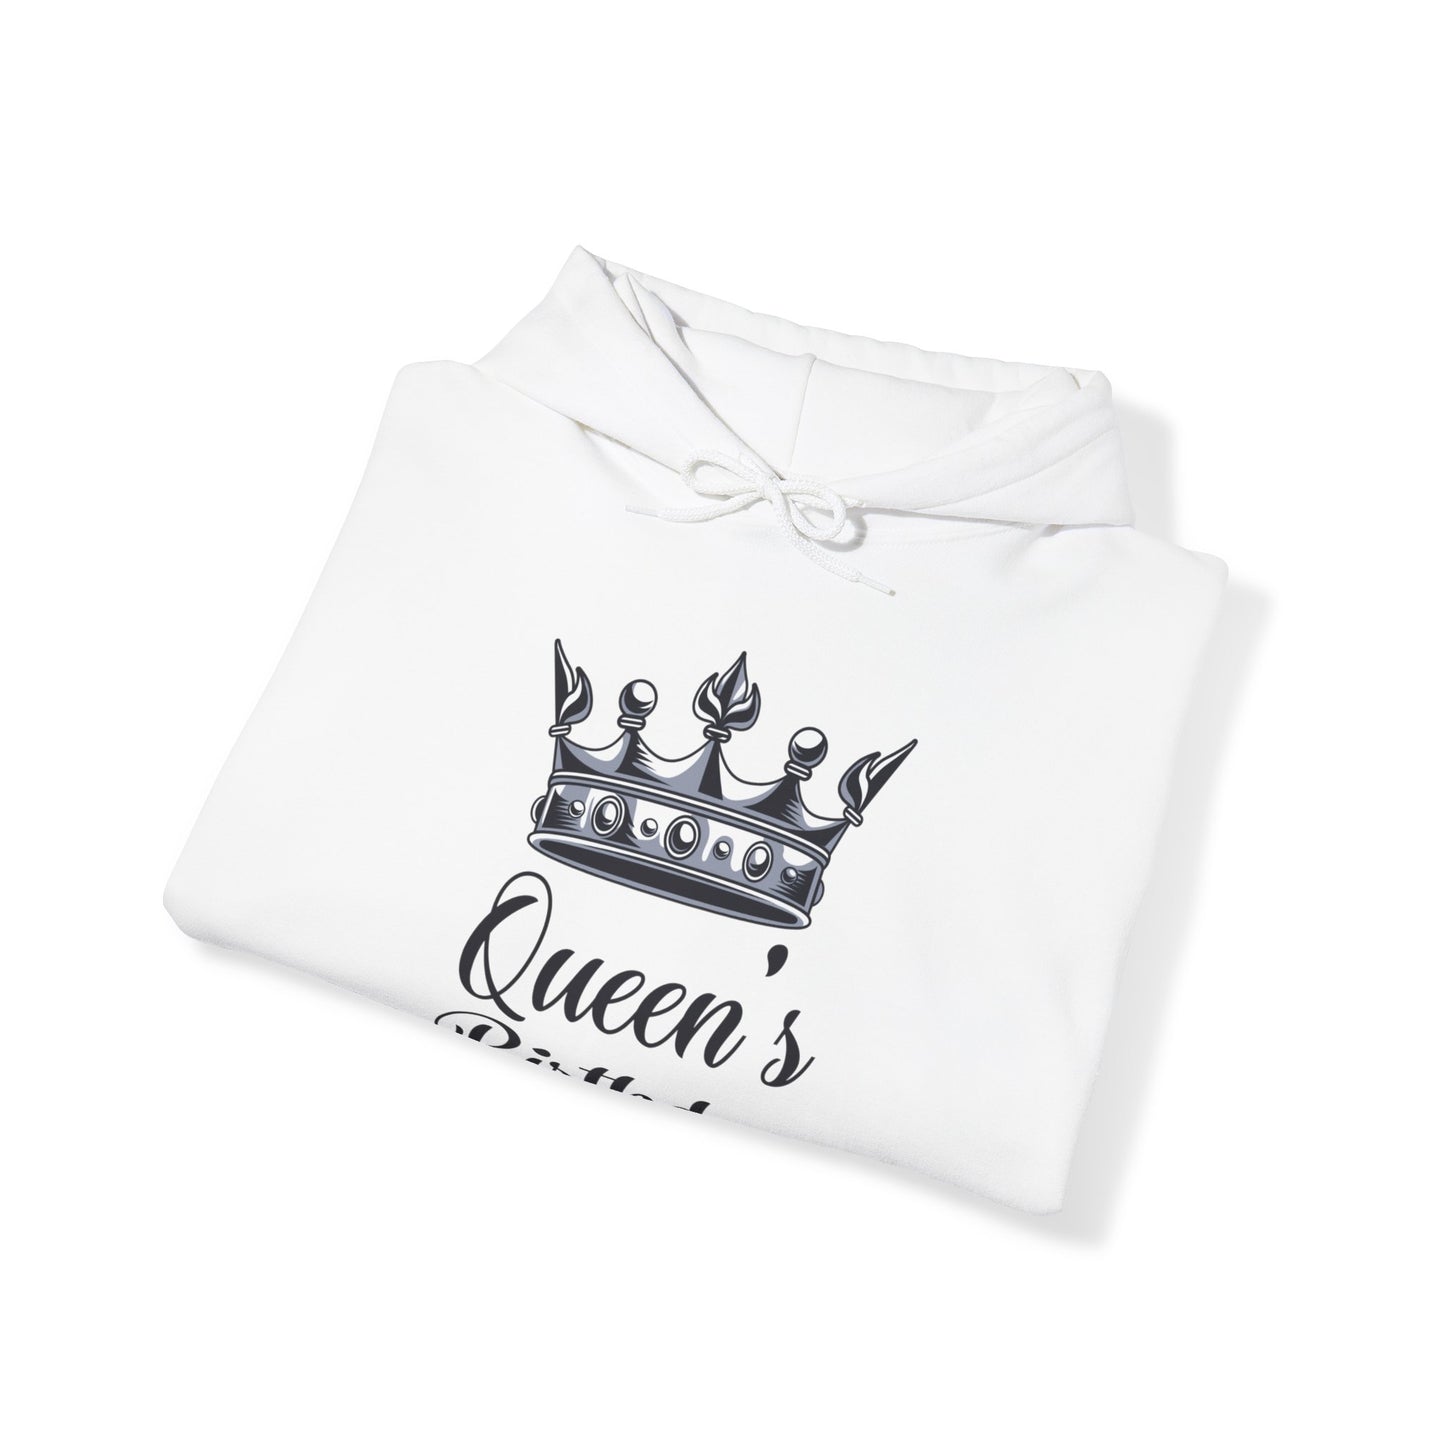 Queen's birthday -  Unisex Heavy Blend™ Hooded Sweatshirt